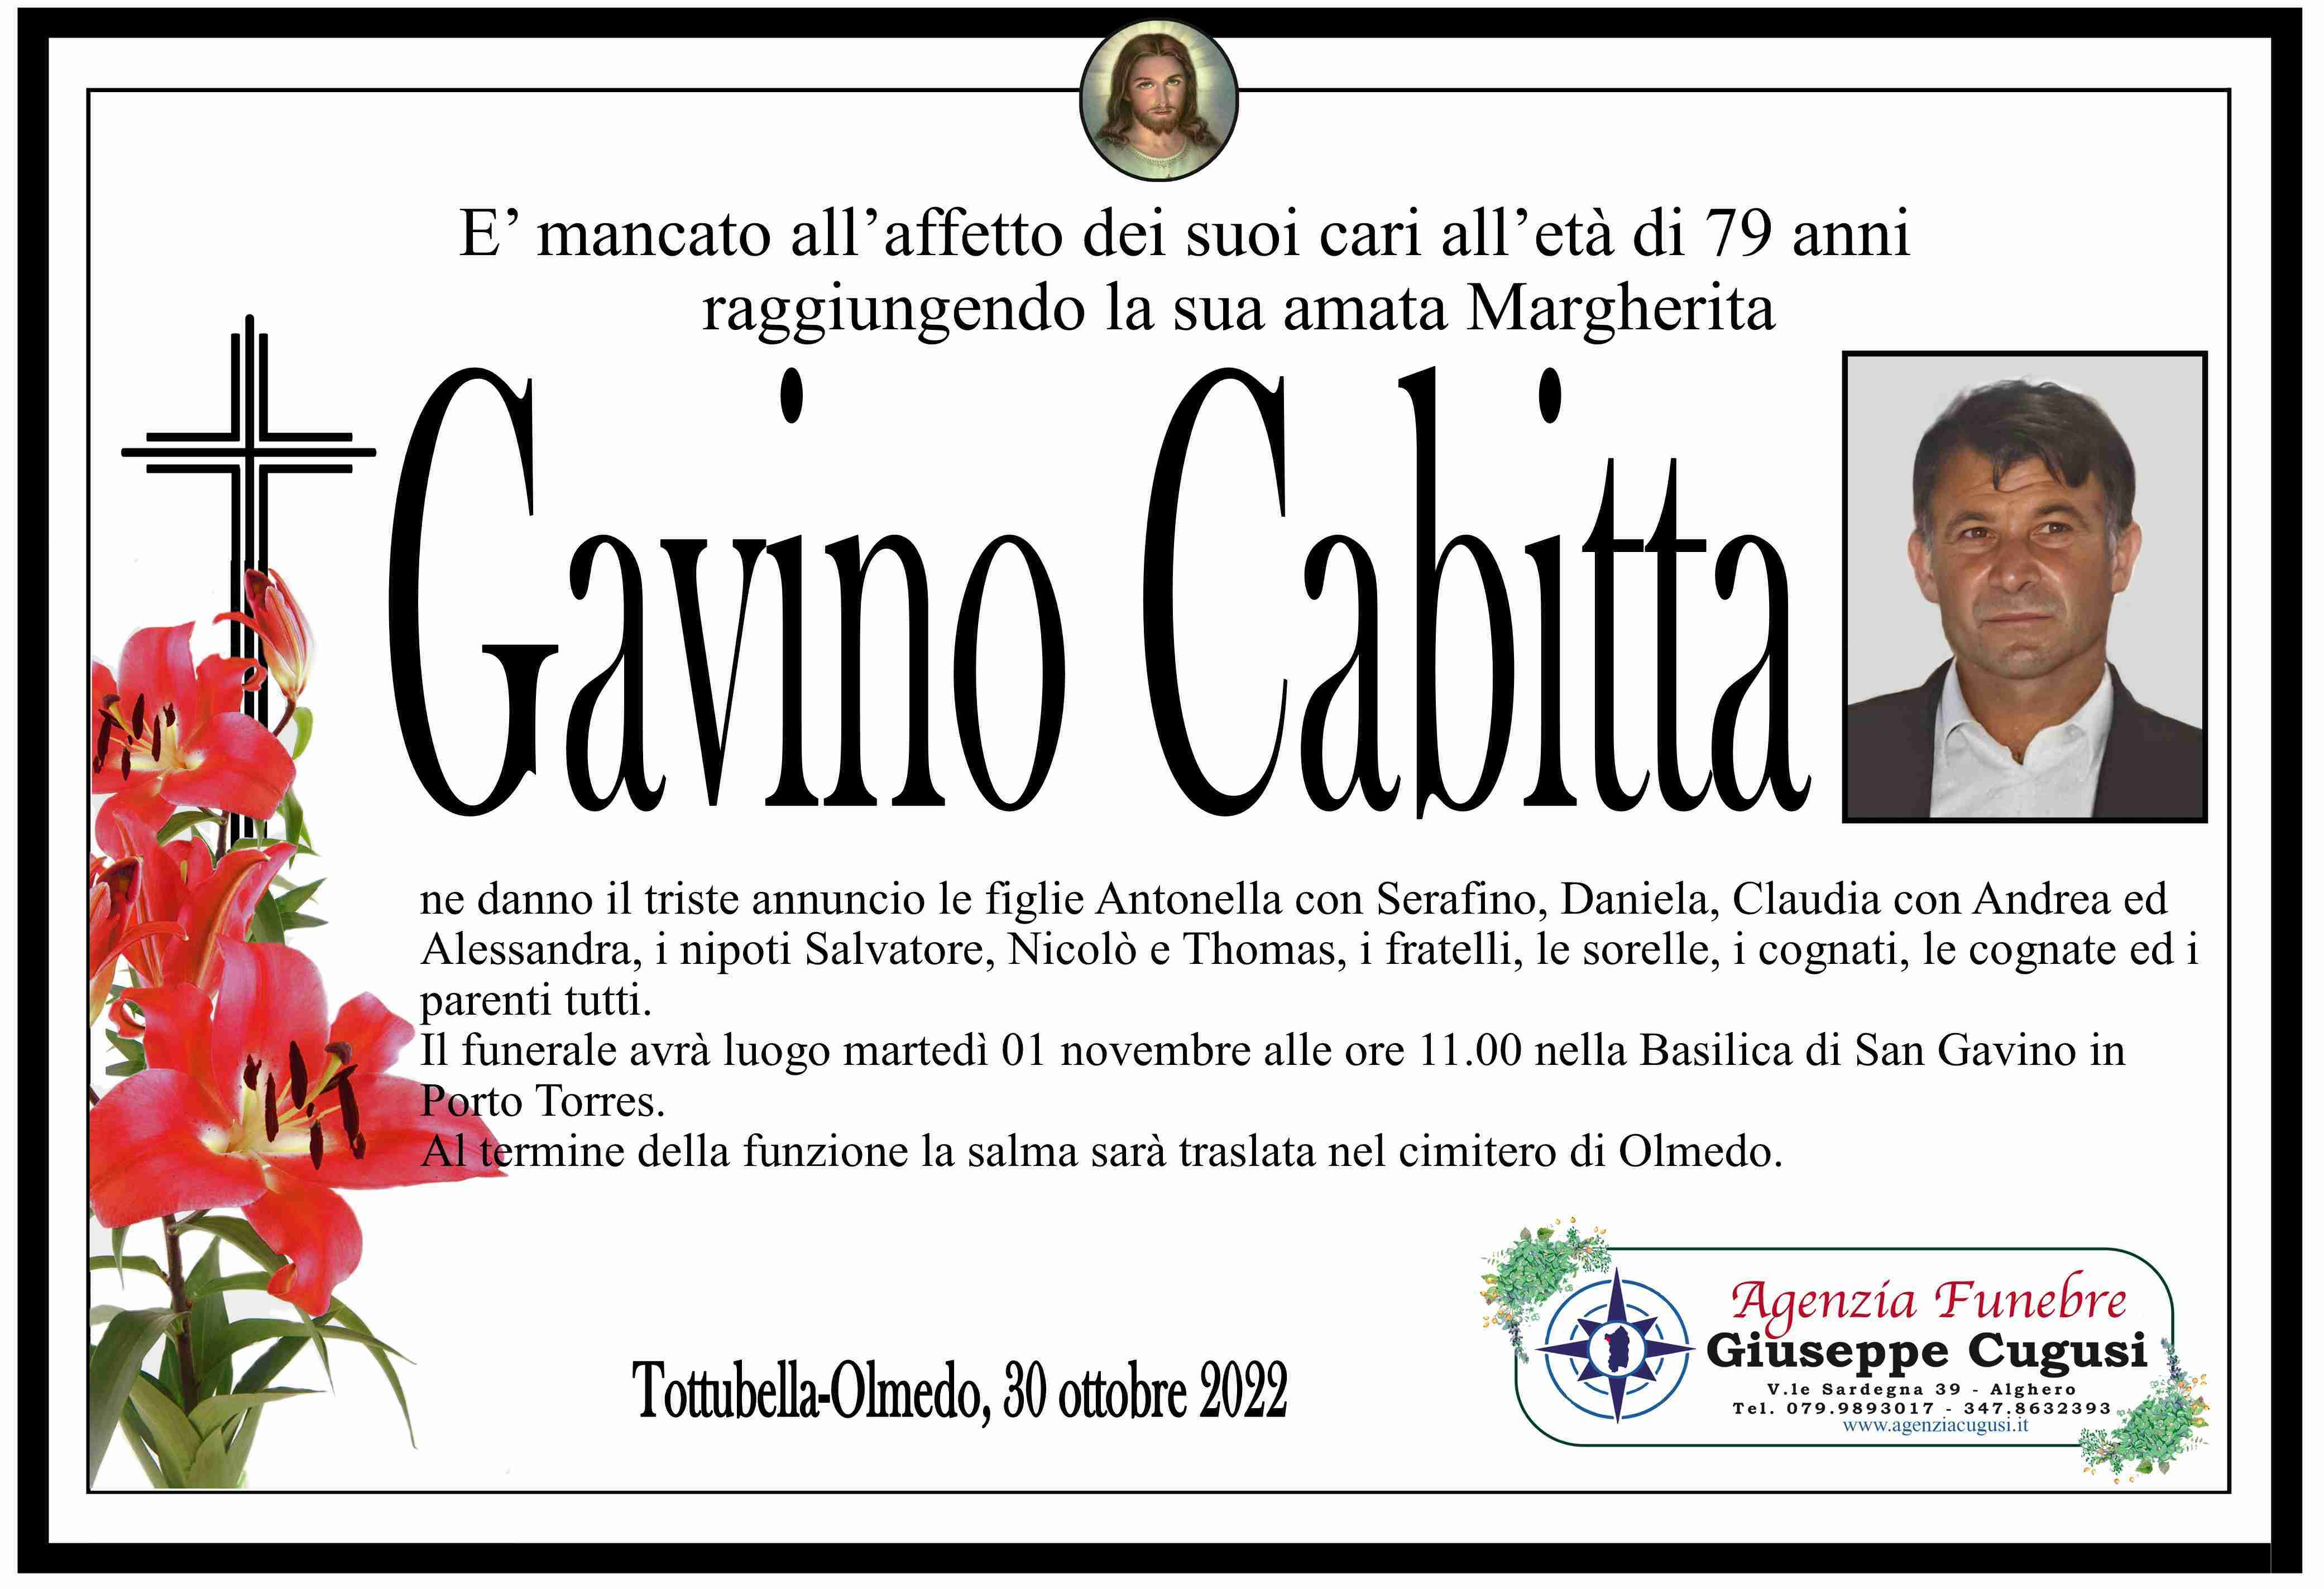 Gavino Cabitta